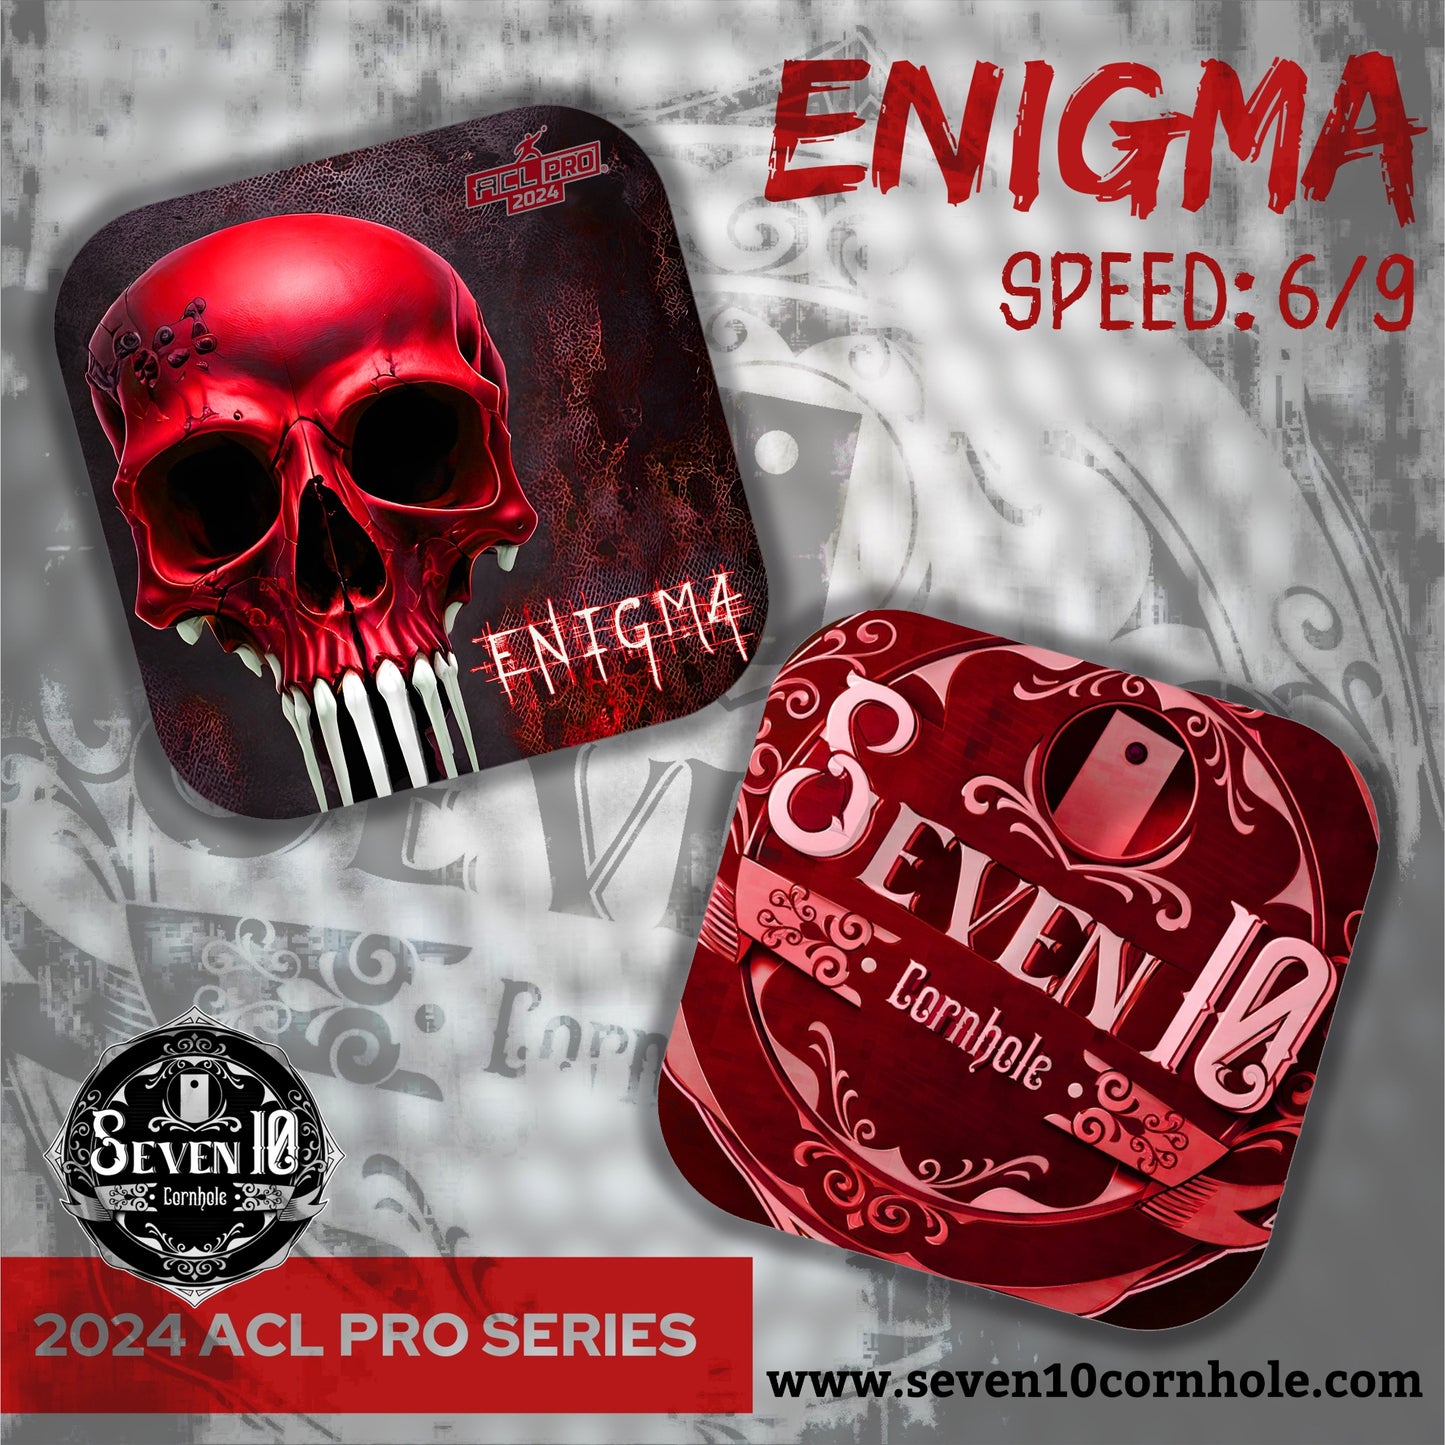 Seven 10 Cornhole Bags - Enigma ACL 2024 Pro Series